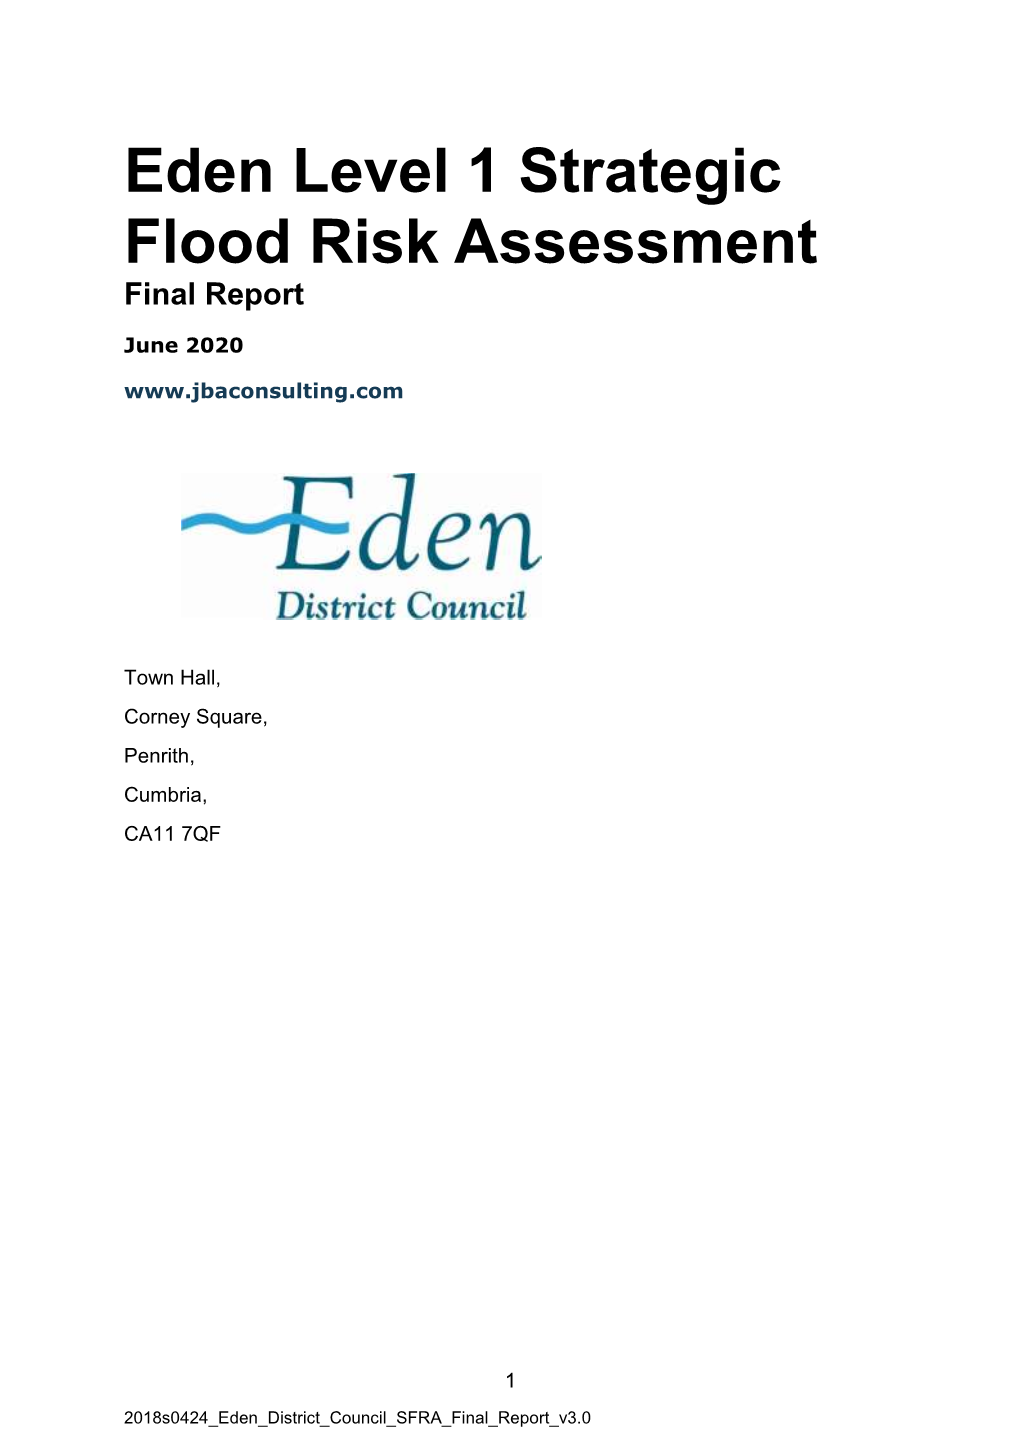 Eden Level 1 Strategic Flood Risk Assessment: Final Report